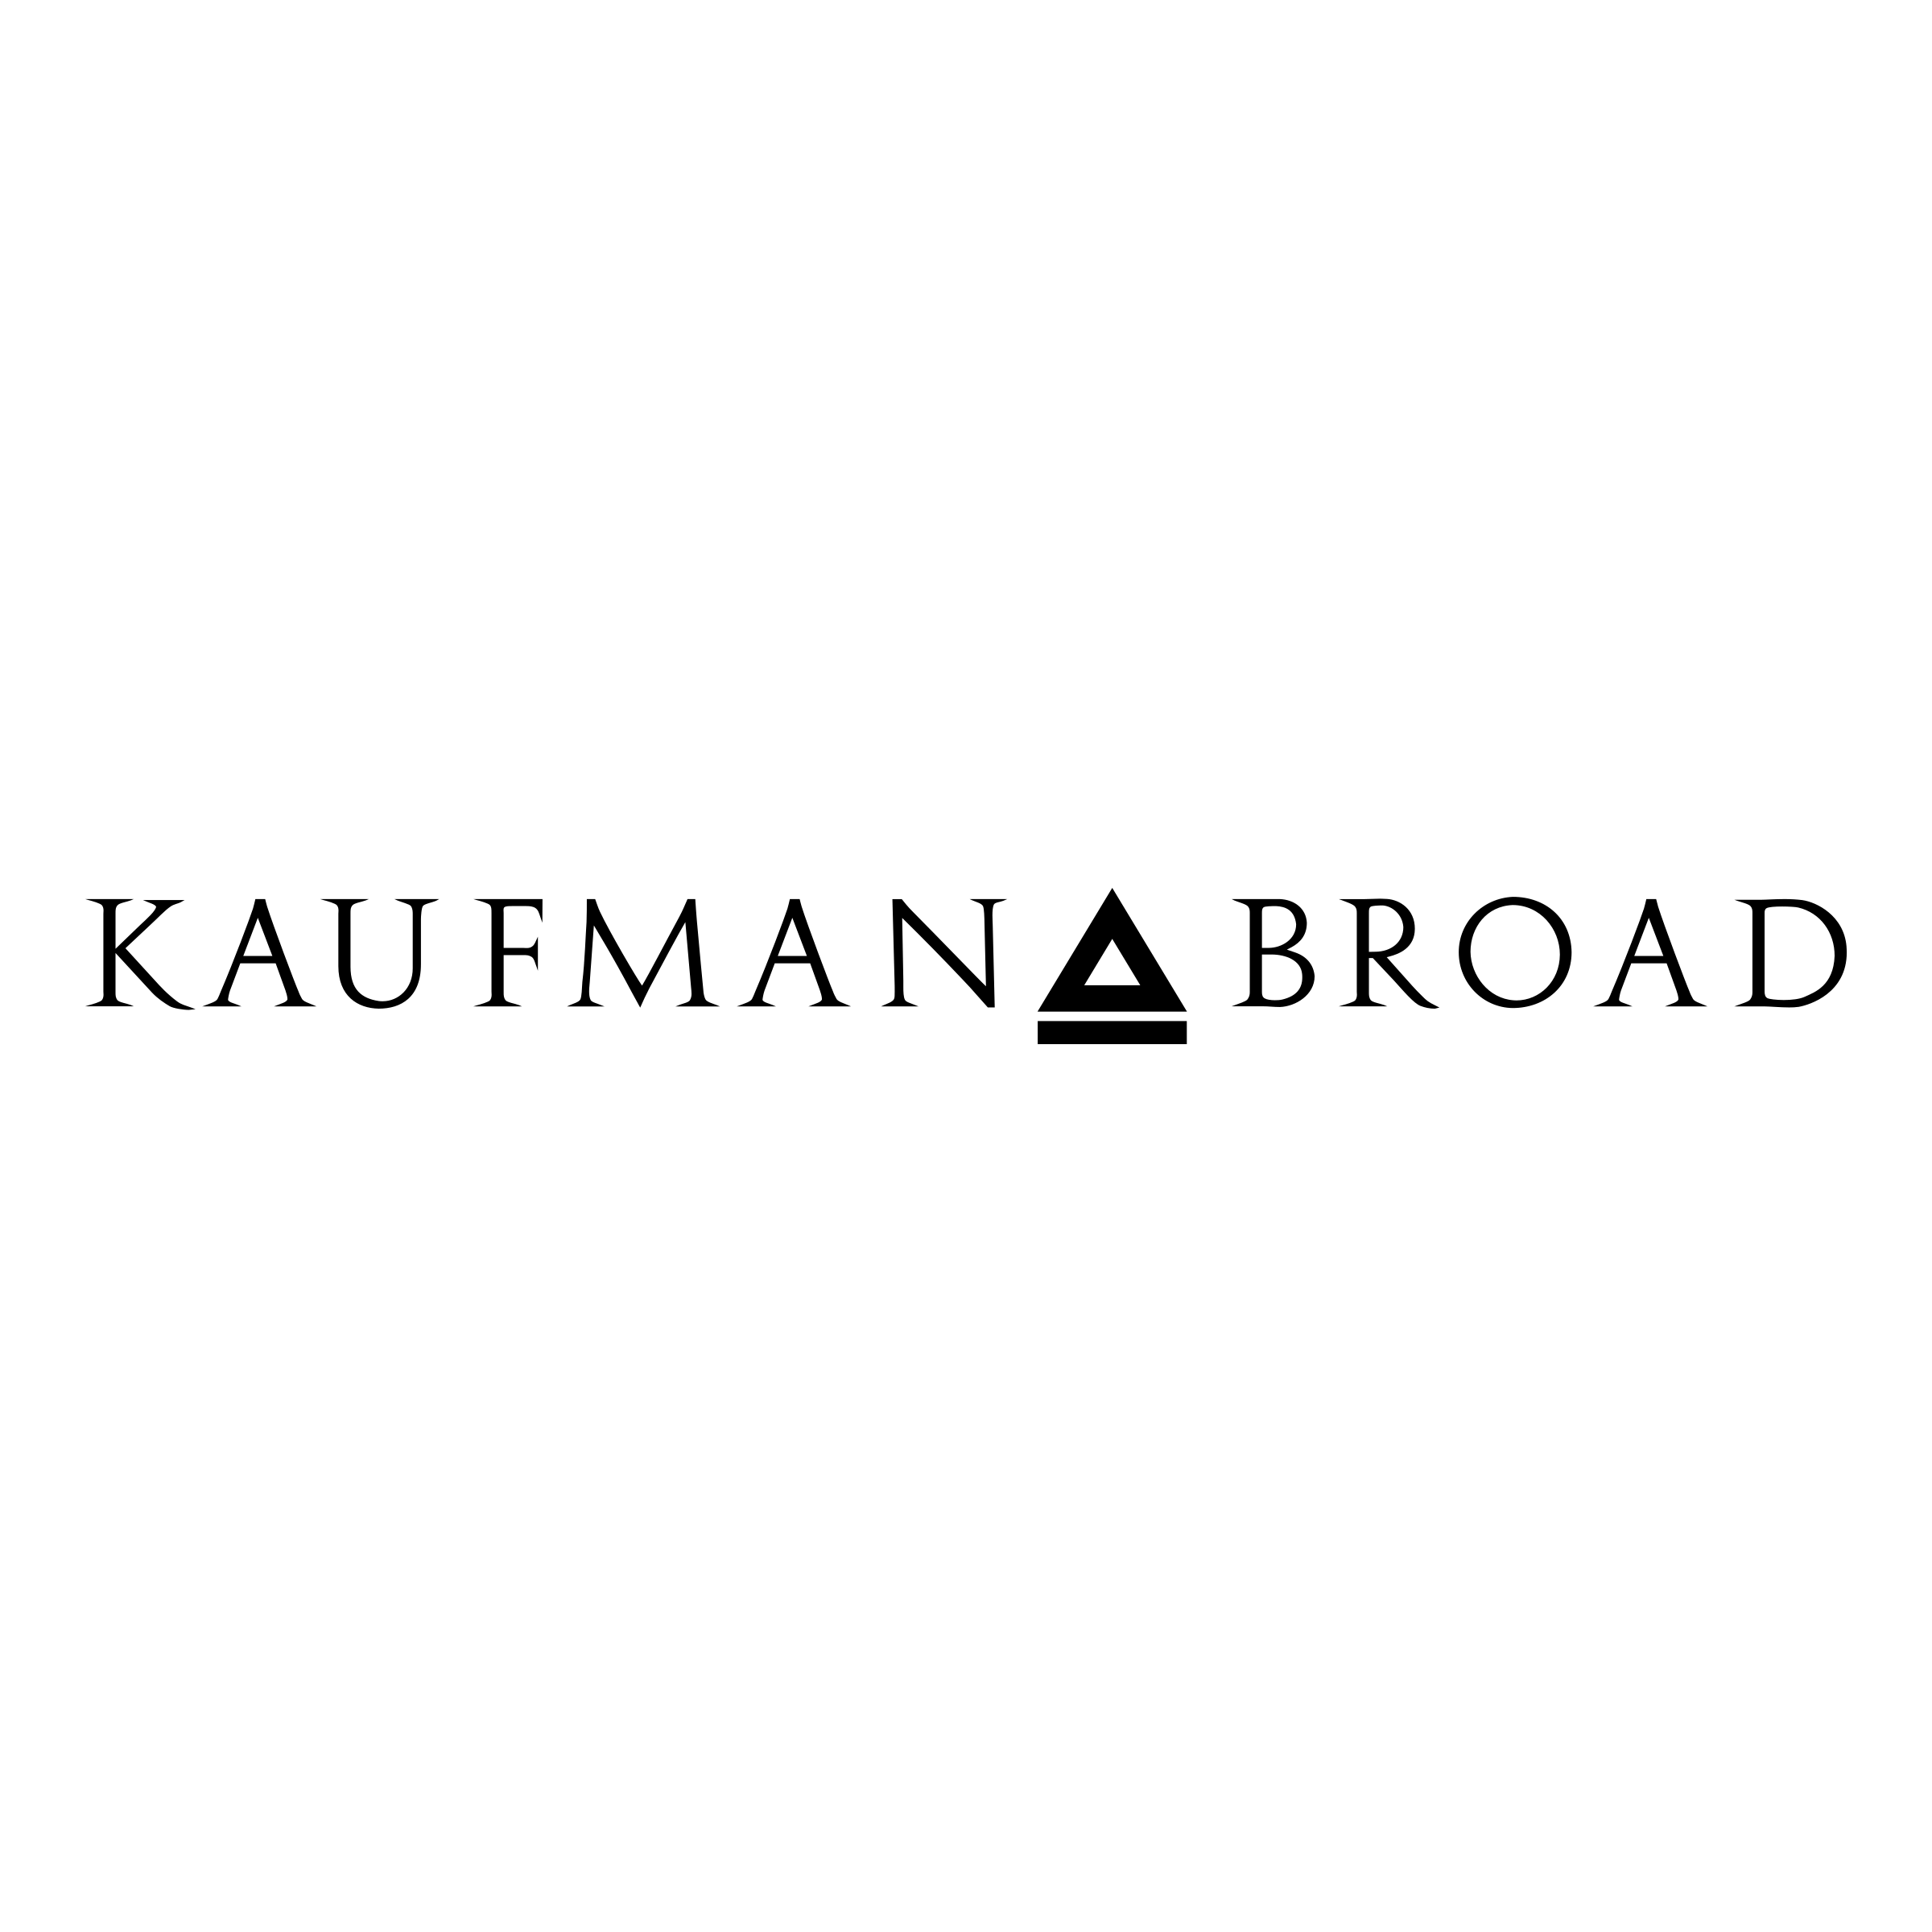 kaufman-broad-logo-png-transparent